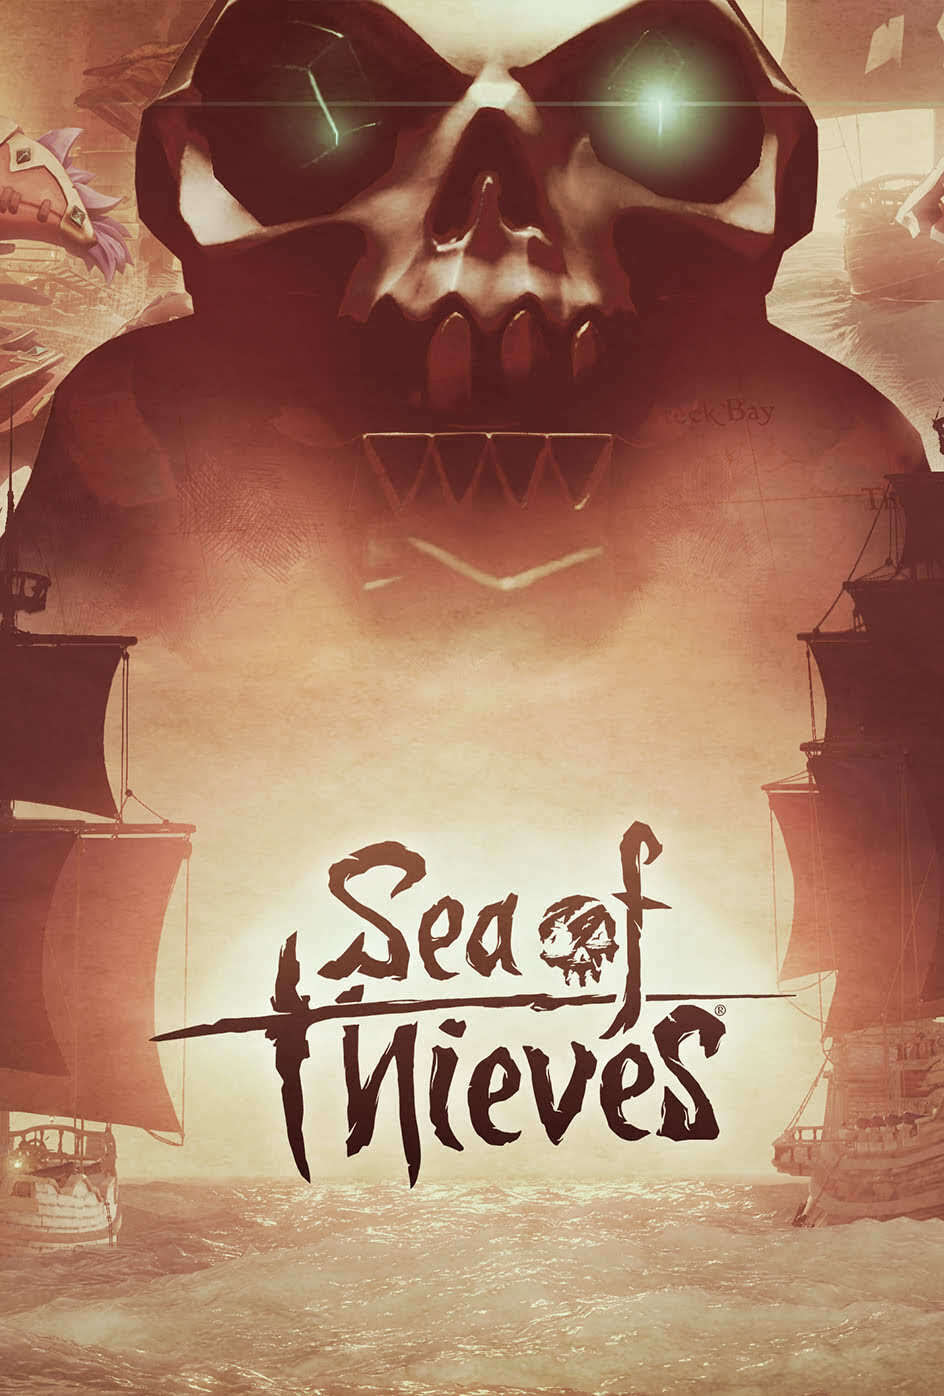 Sea of Thieves (Steam PC) | 0 Spielstunden | Blitzversand [GLOBAL] No Key